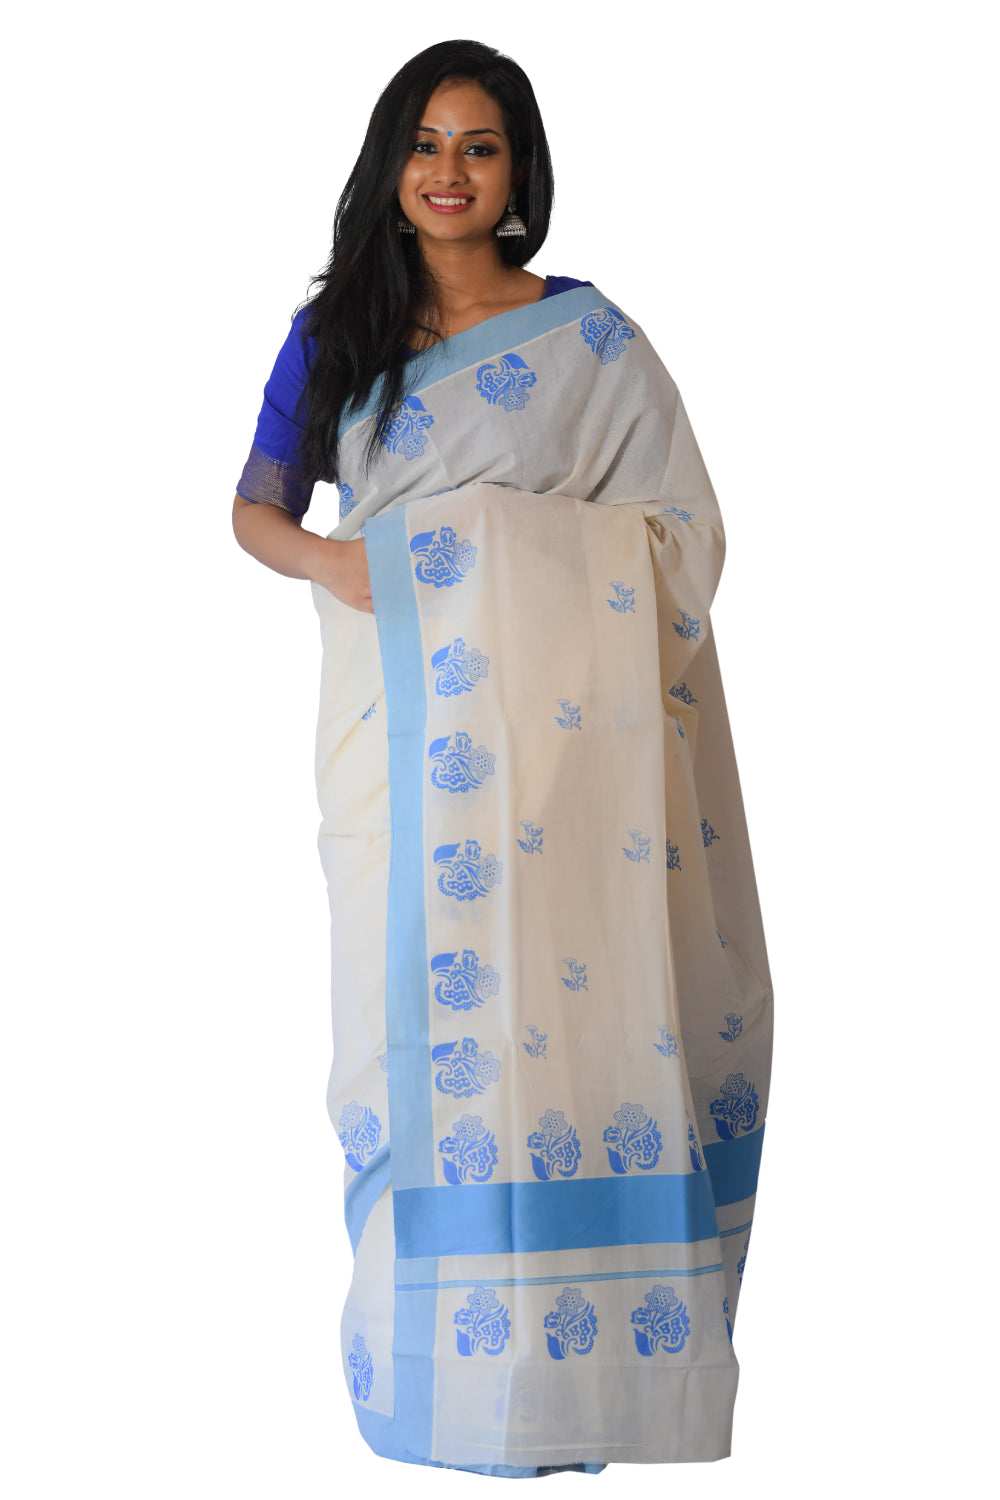 Kerala Saree with Light Blue Floral Block Print